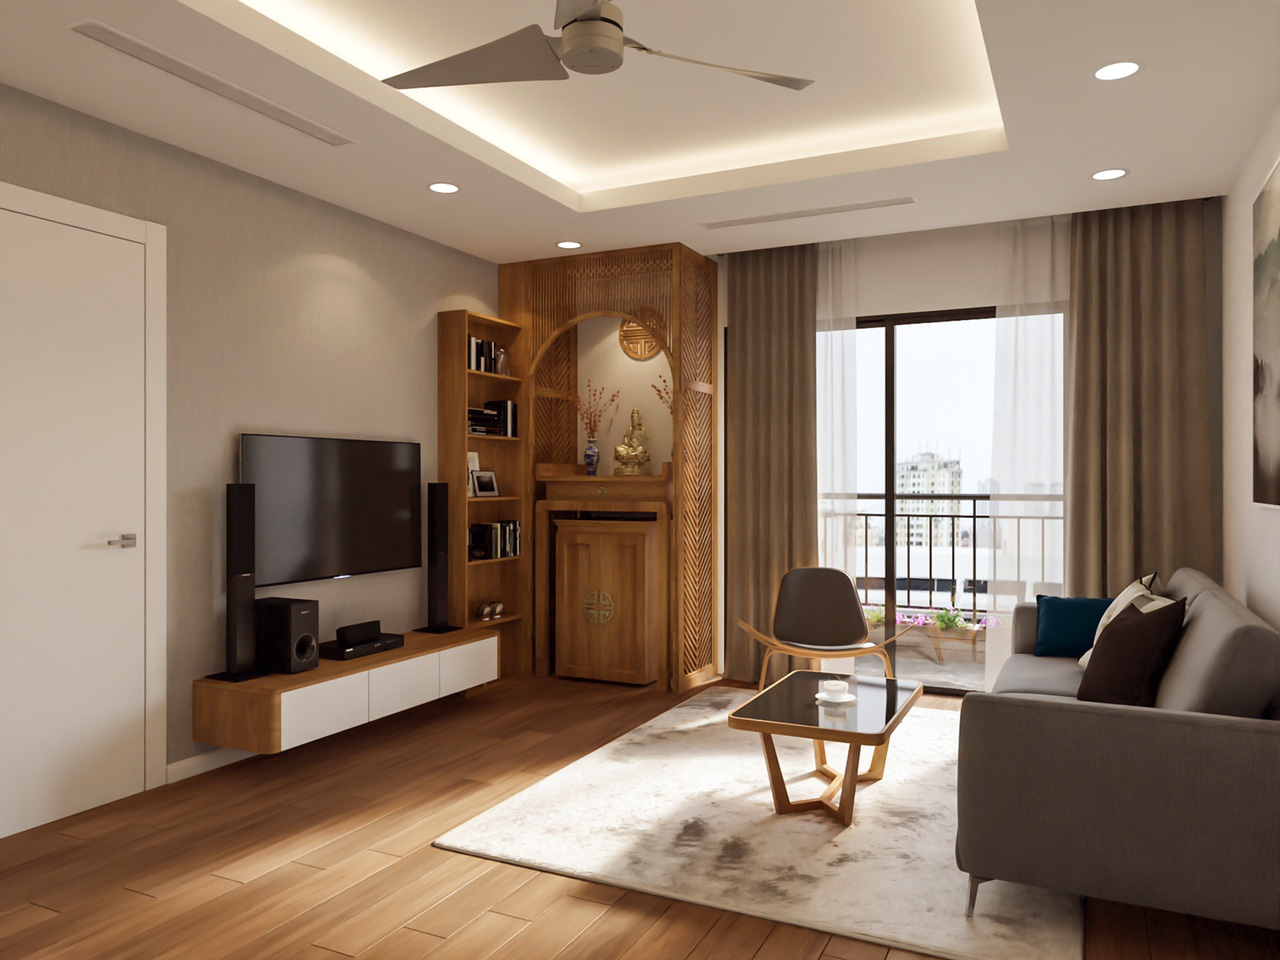  Phòng khách hiện đại với sự kết hợp hài hòa giữa màu sắc sàn gỗ và đồ nội thất trong không gian.